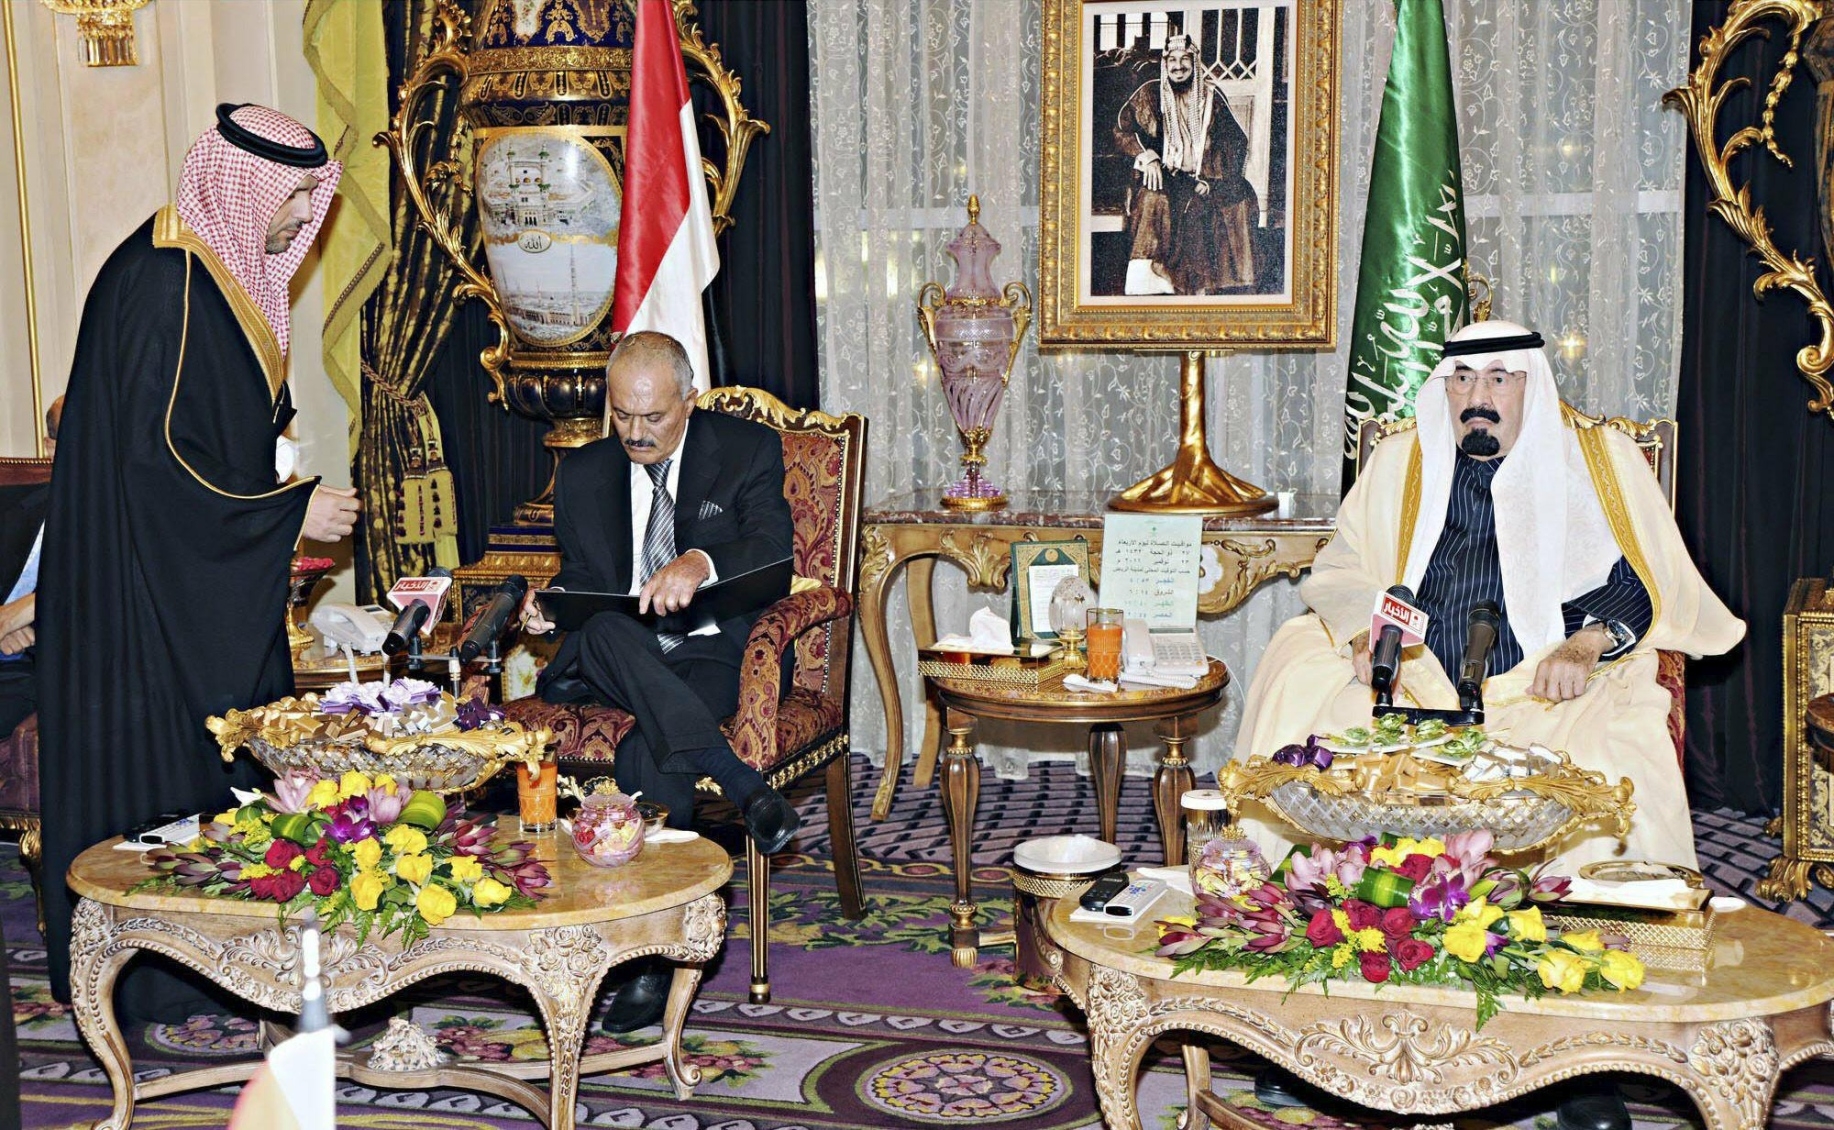 الطائف اللبناني والمبادرة الخليجية في اليمن كنماذج إقليمية لفض النزاعات